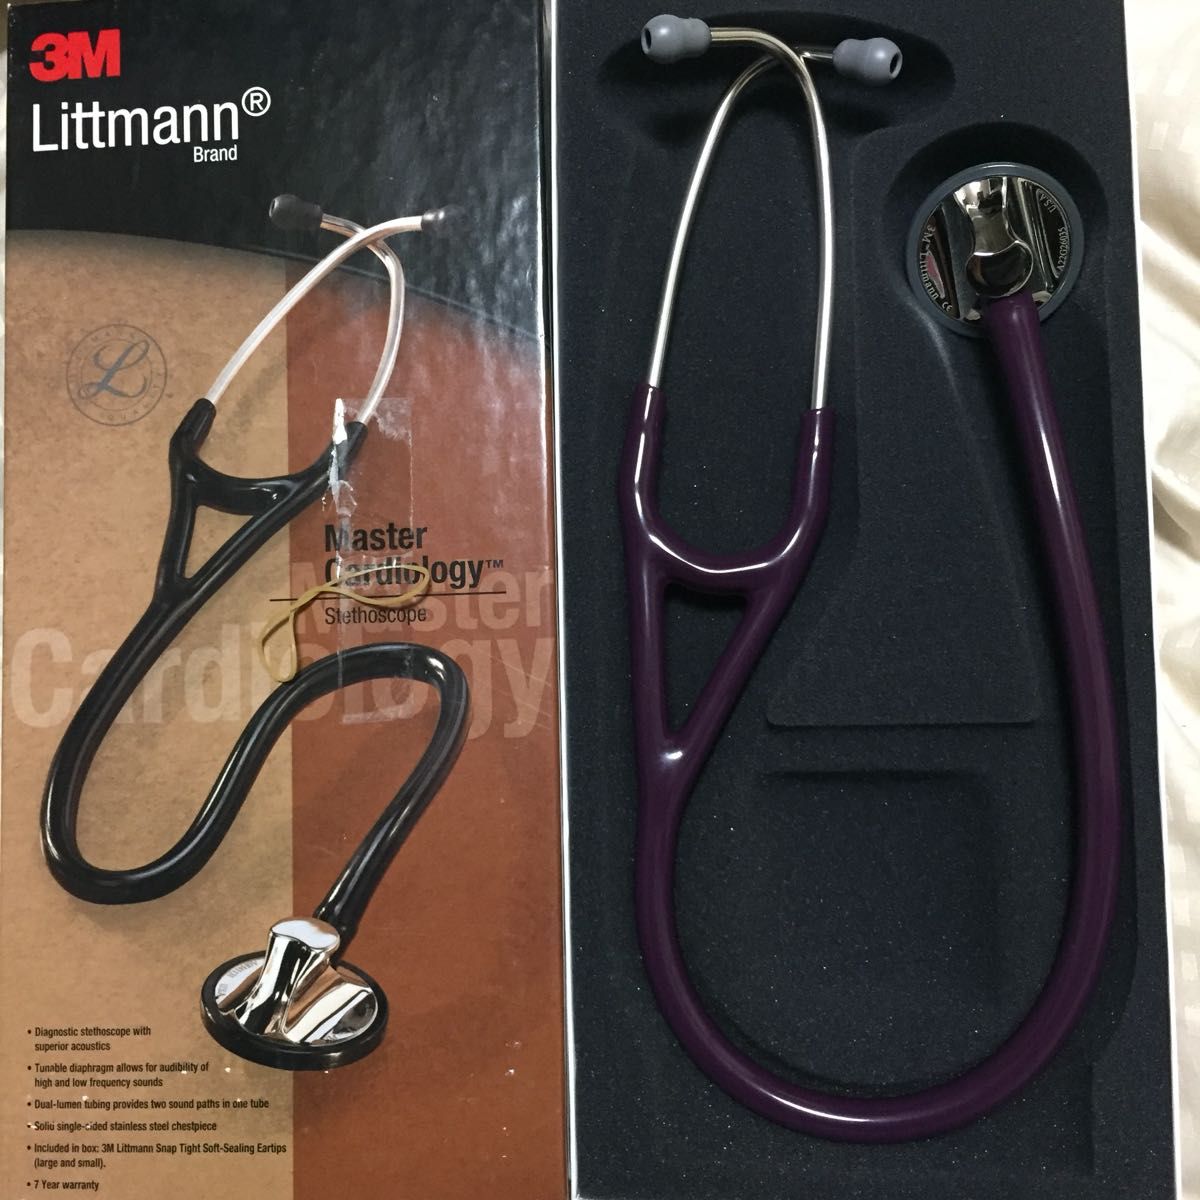 【新品・未使用&刻印なし&チューブ柔らか】 3M Littmann 最上位機種 Master Cardiology Littman